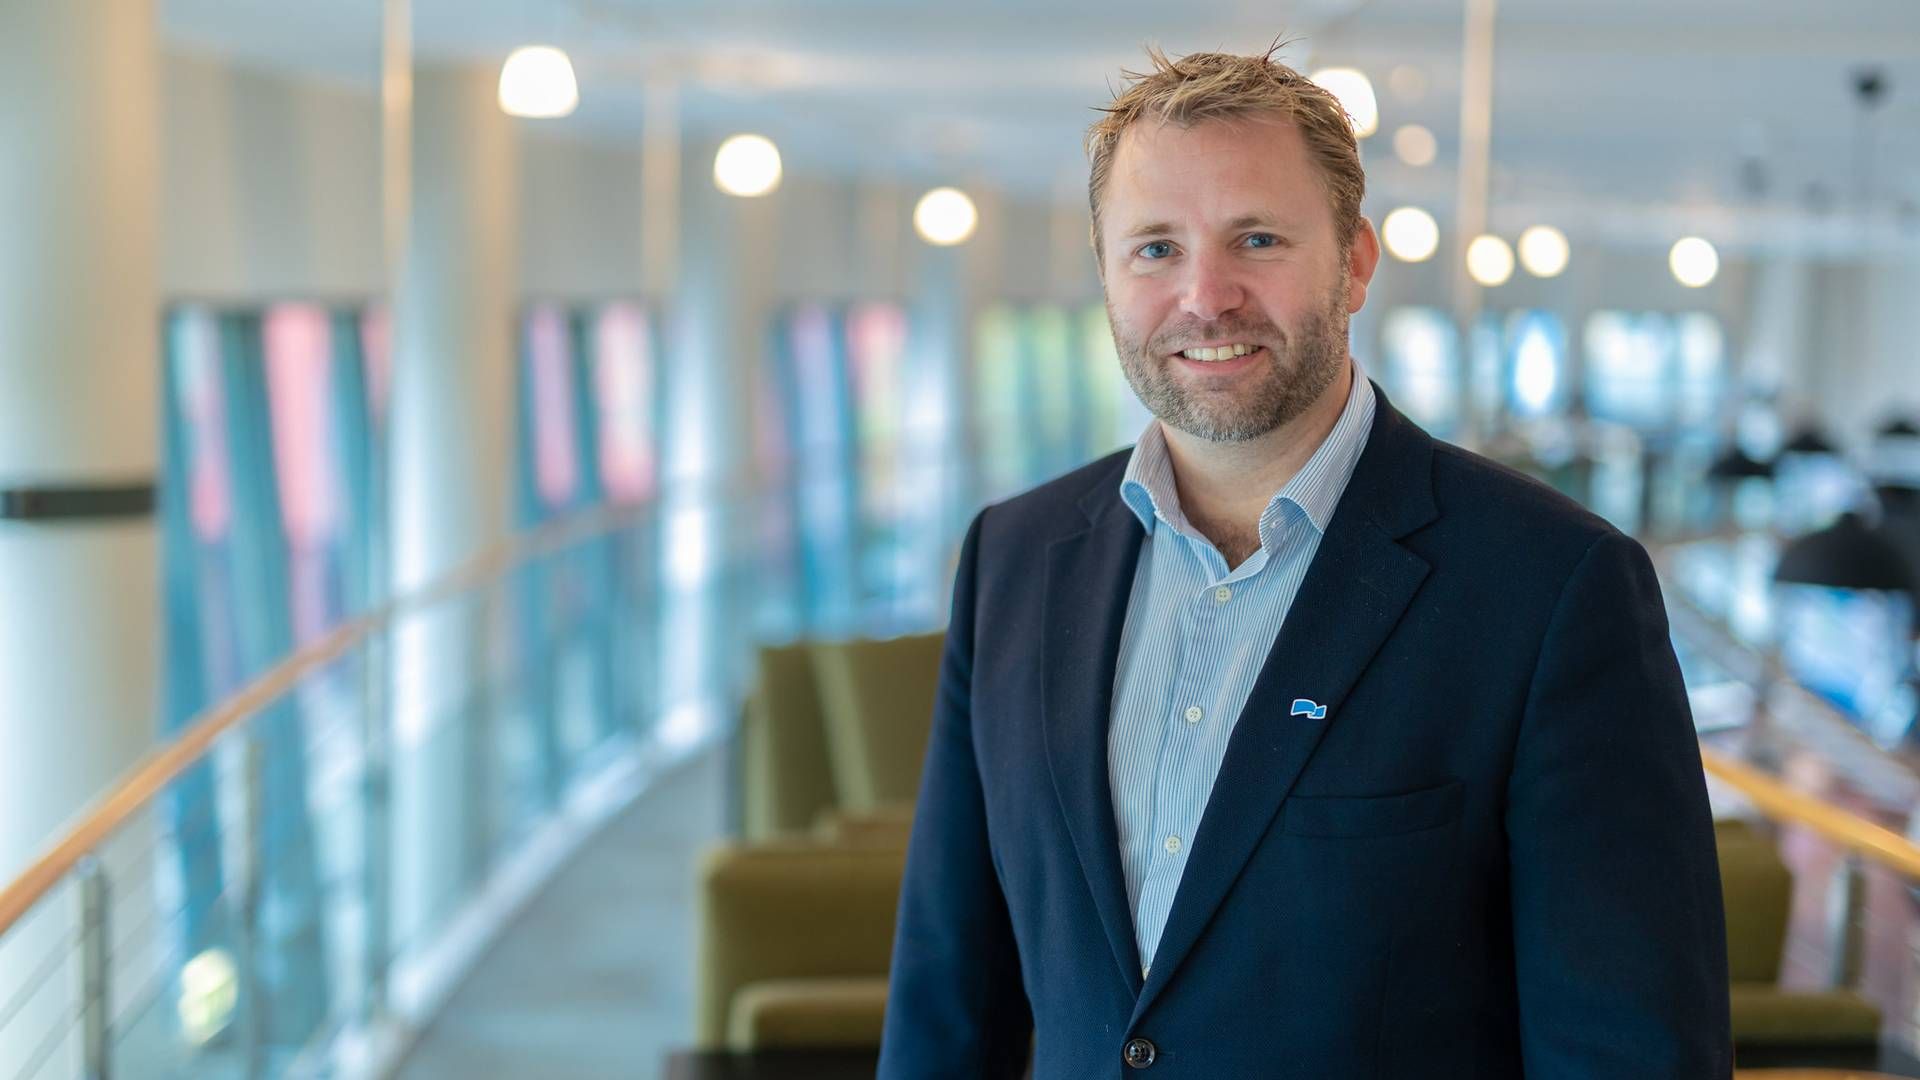 NY ORDFØRER: Arne Sekkelsten (H) er ny ordfører i Fredrikstad. | Foto: Hans Kristian Thorbjørnsen/Høyre